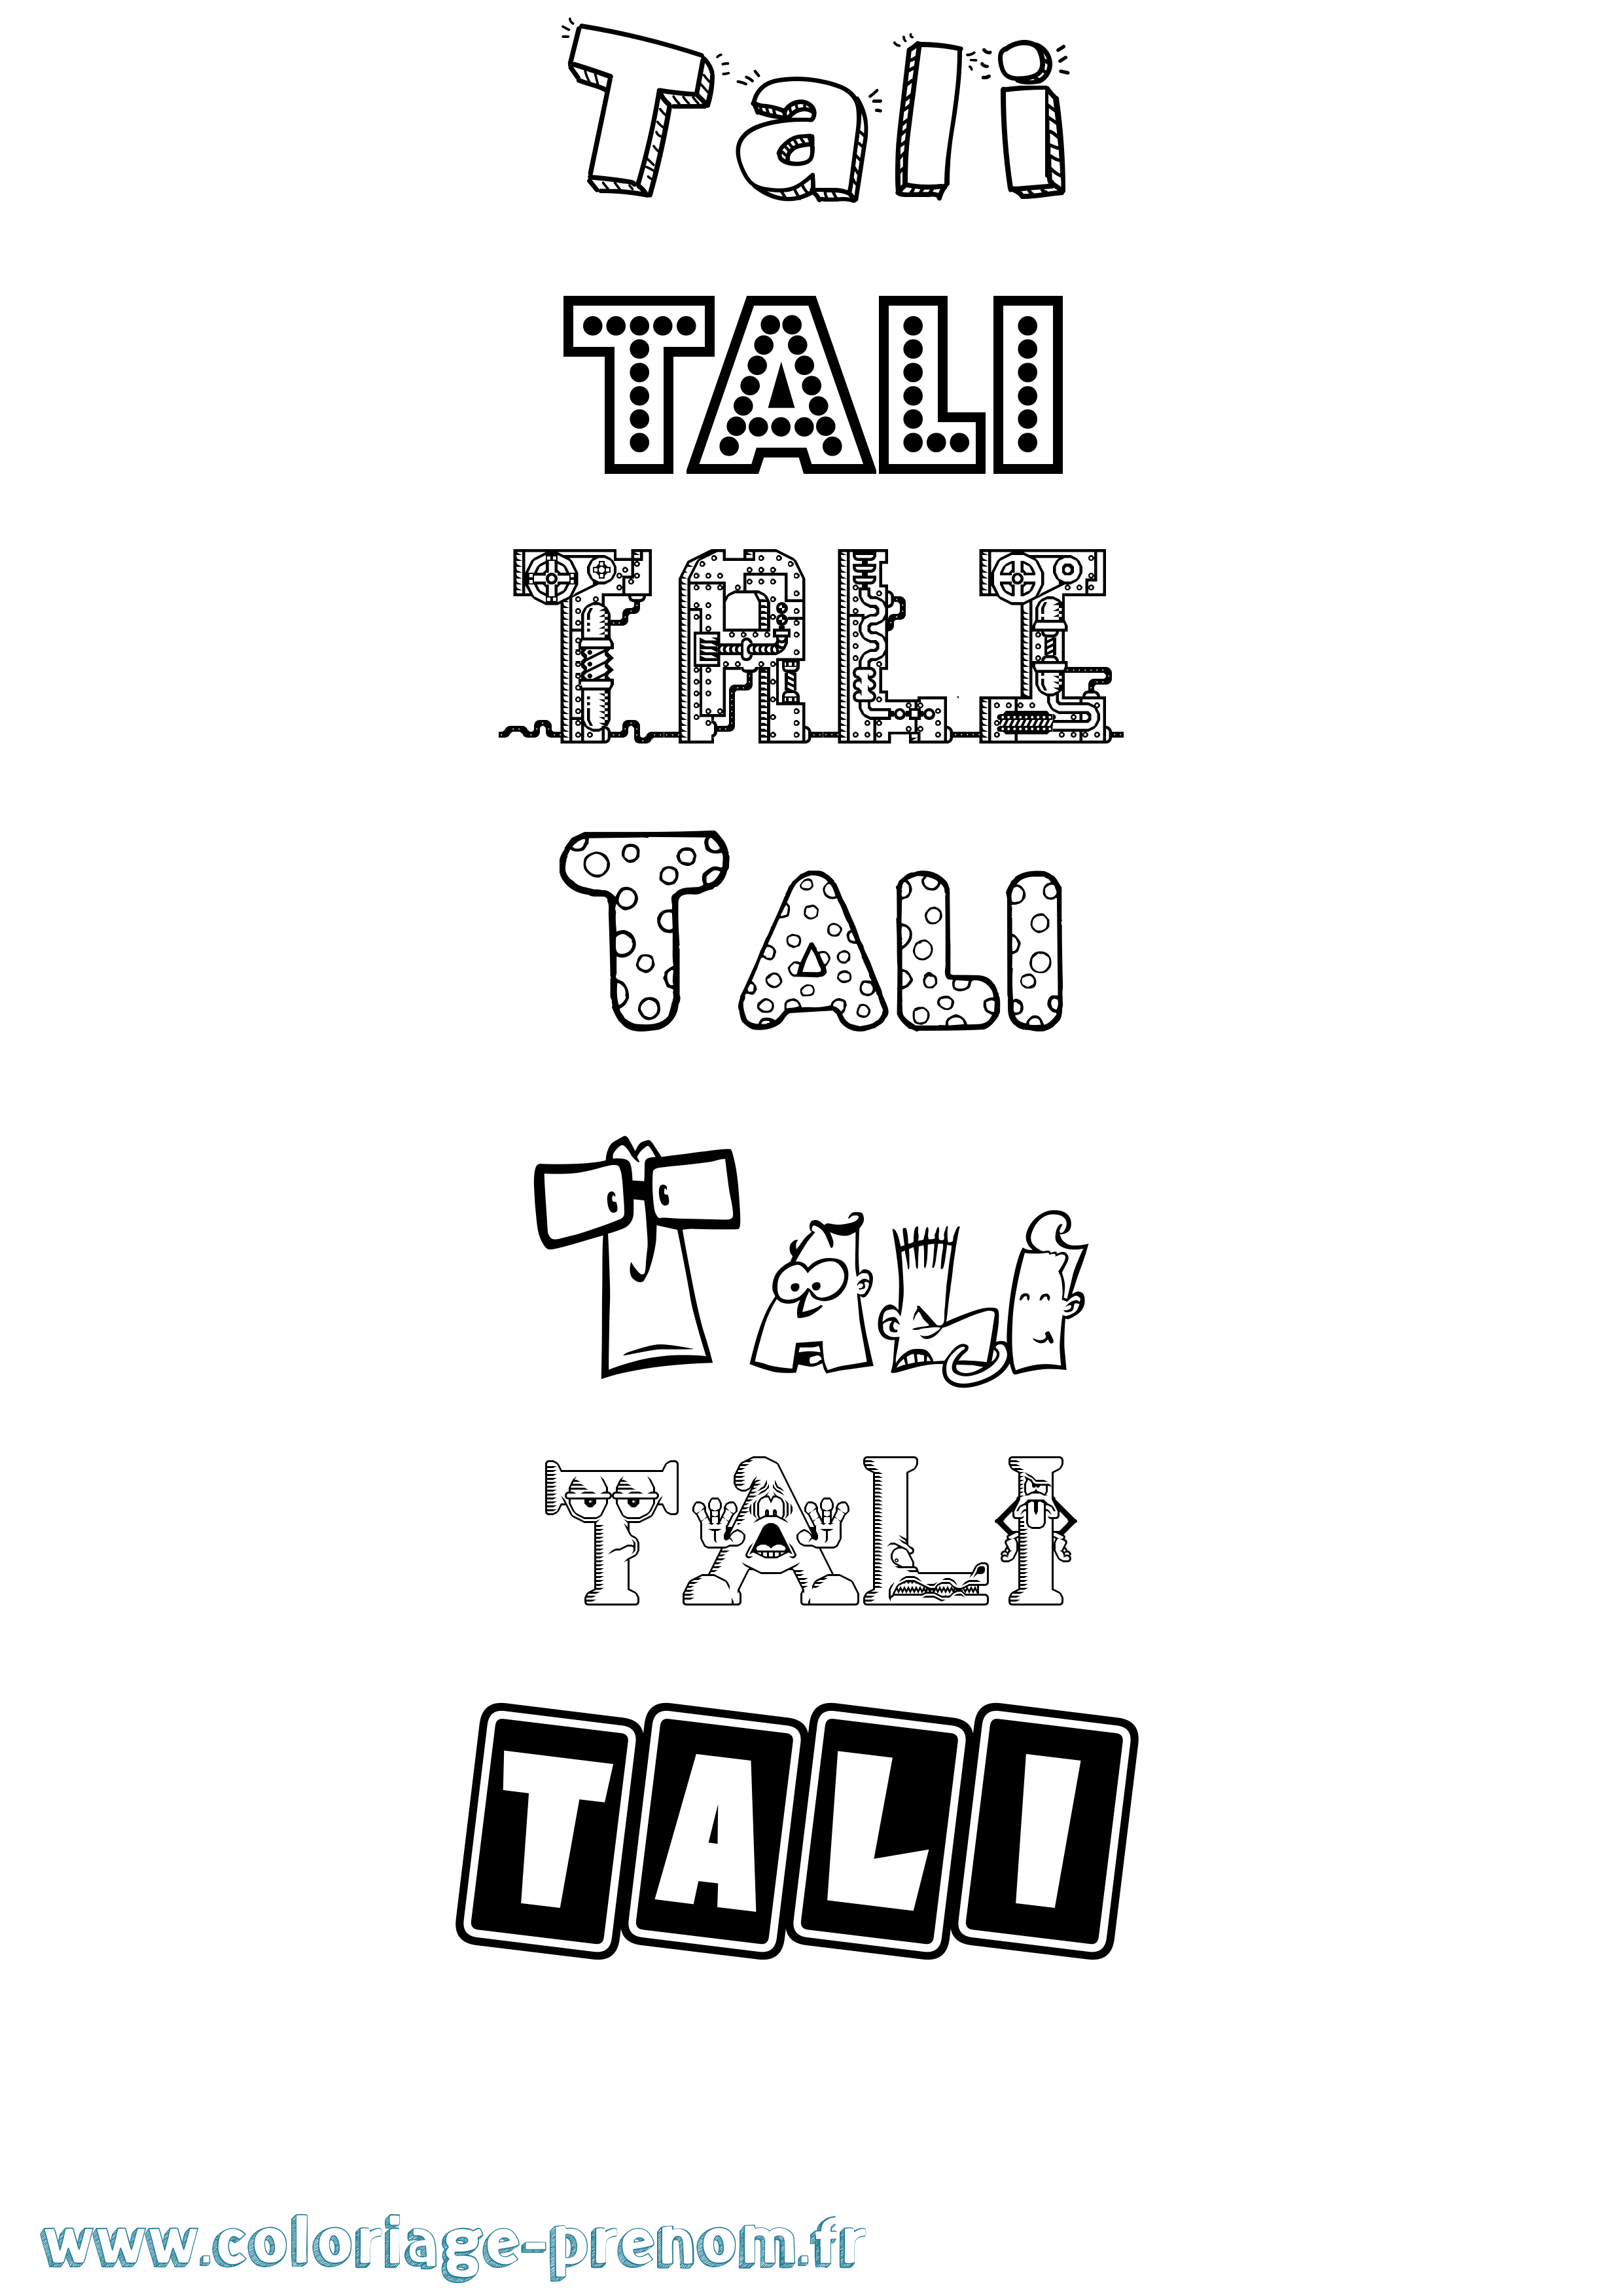 Coloriage prénom Tali Fun